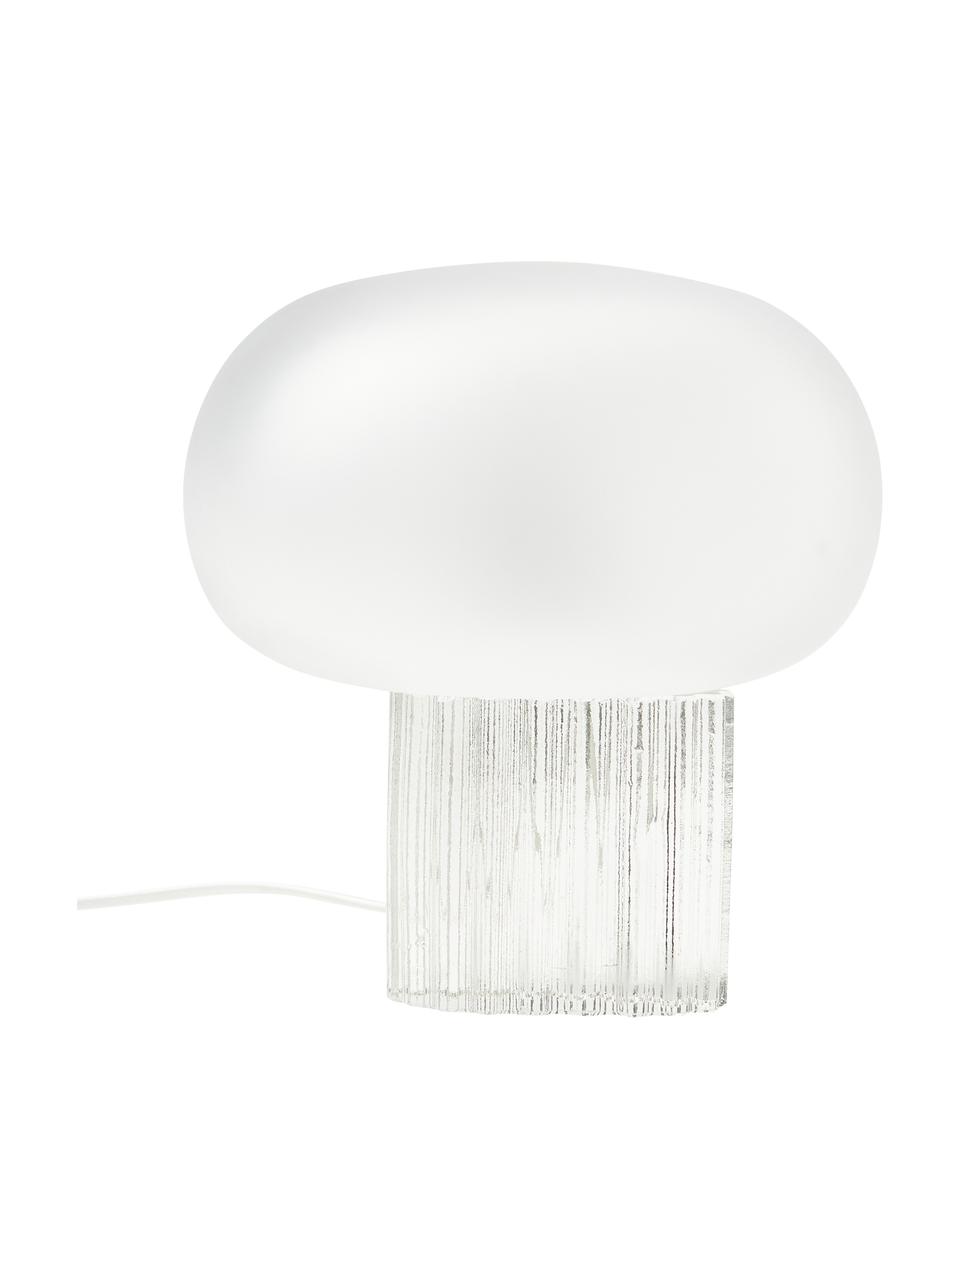 Tischlampe Makoto aus Glas, Lampenschirm: Opalglas, Lampenfuß: Glas, Weiß, semi-transparent, Ø 28 x H 30 cm